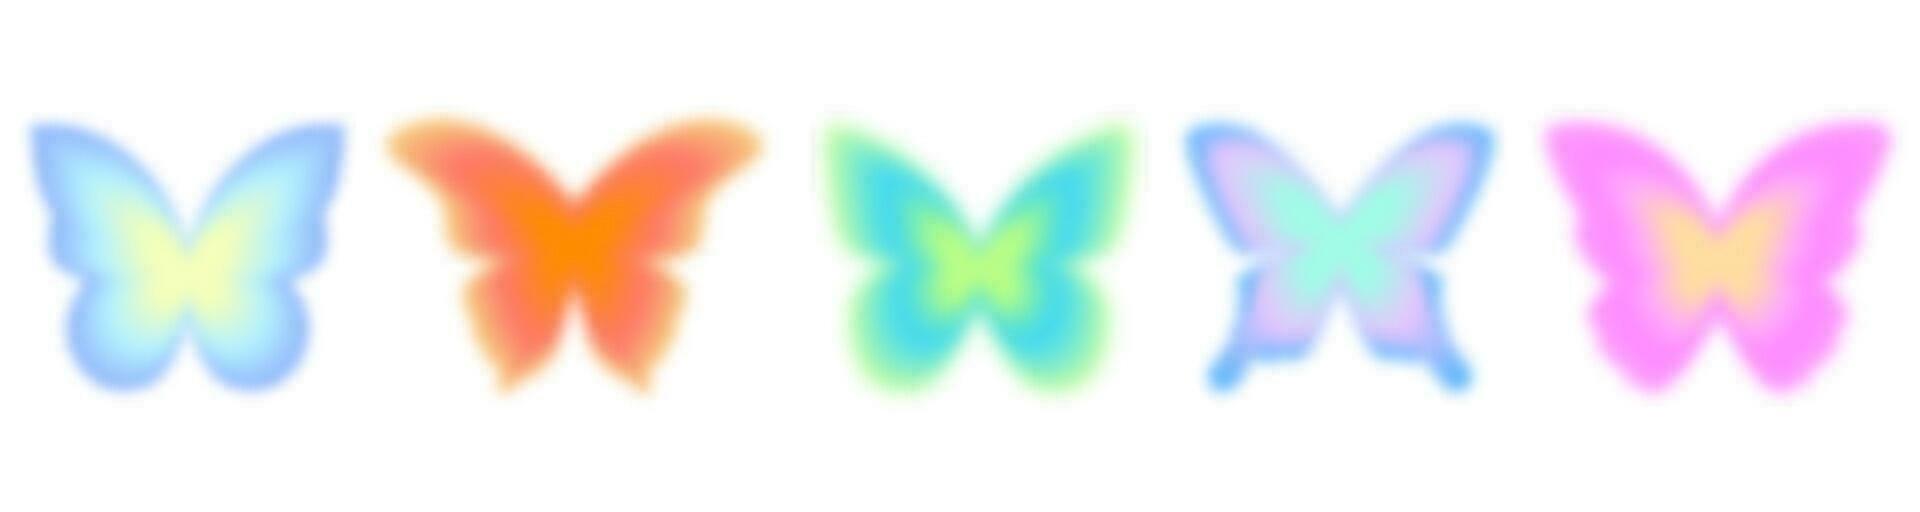 y2k degradado mariposa. aura pegatinas holográfico borroso cifras. maravilloso estético neón colocar. vector Clásico conjunto